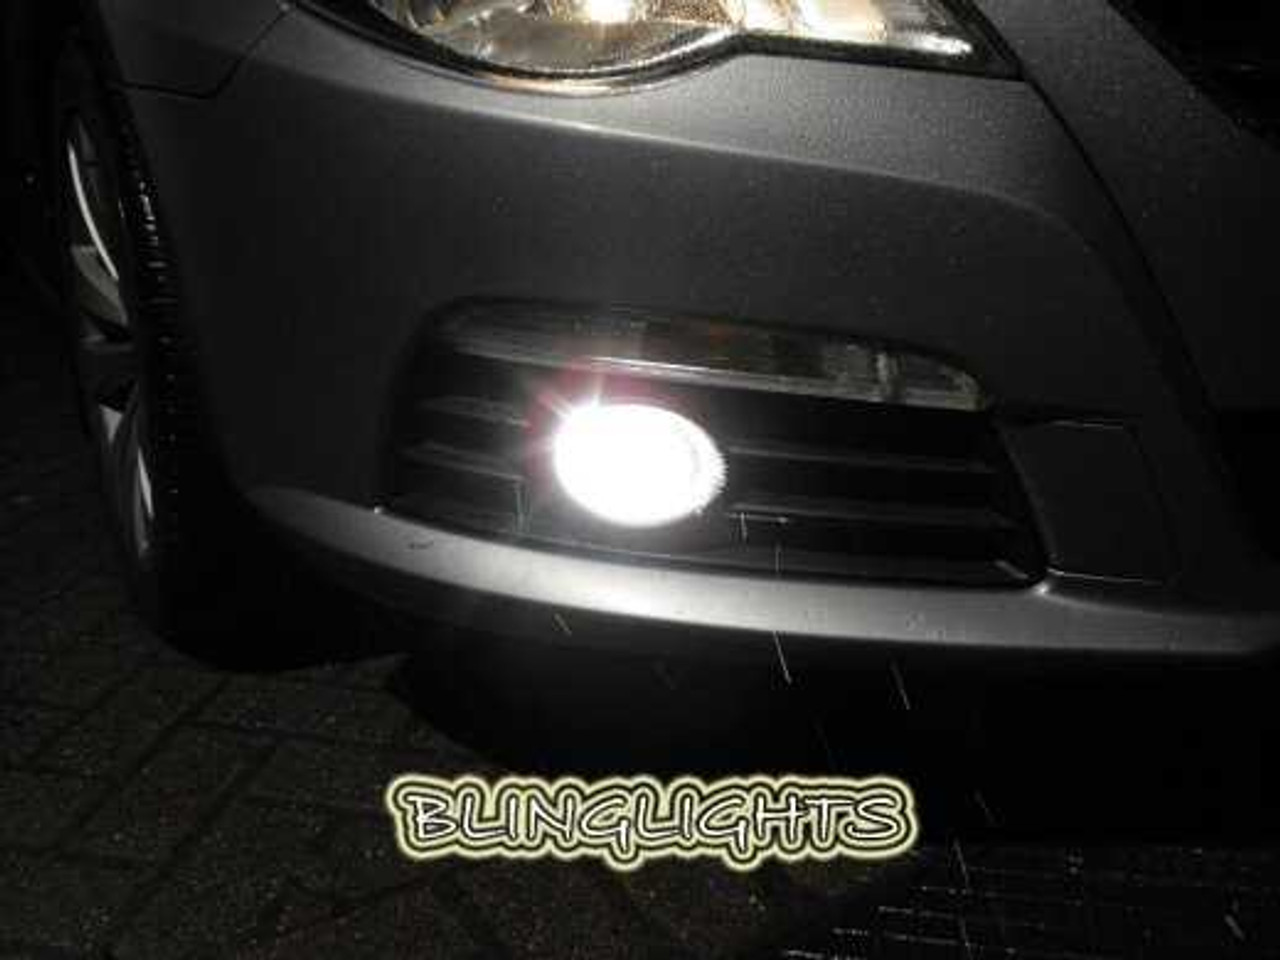 2009 2010 2011 VW Passat CC Fog Lamp Driving Light Kit Xenon